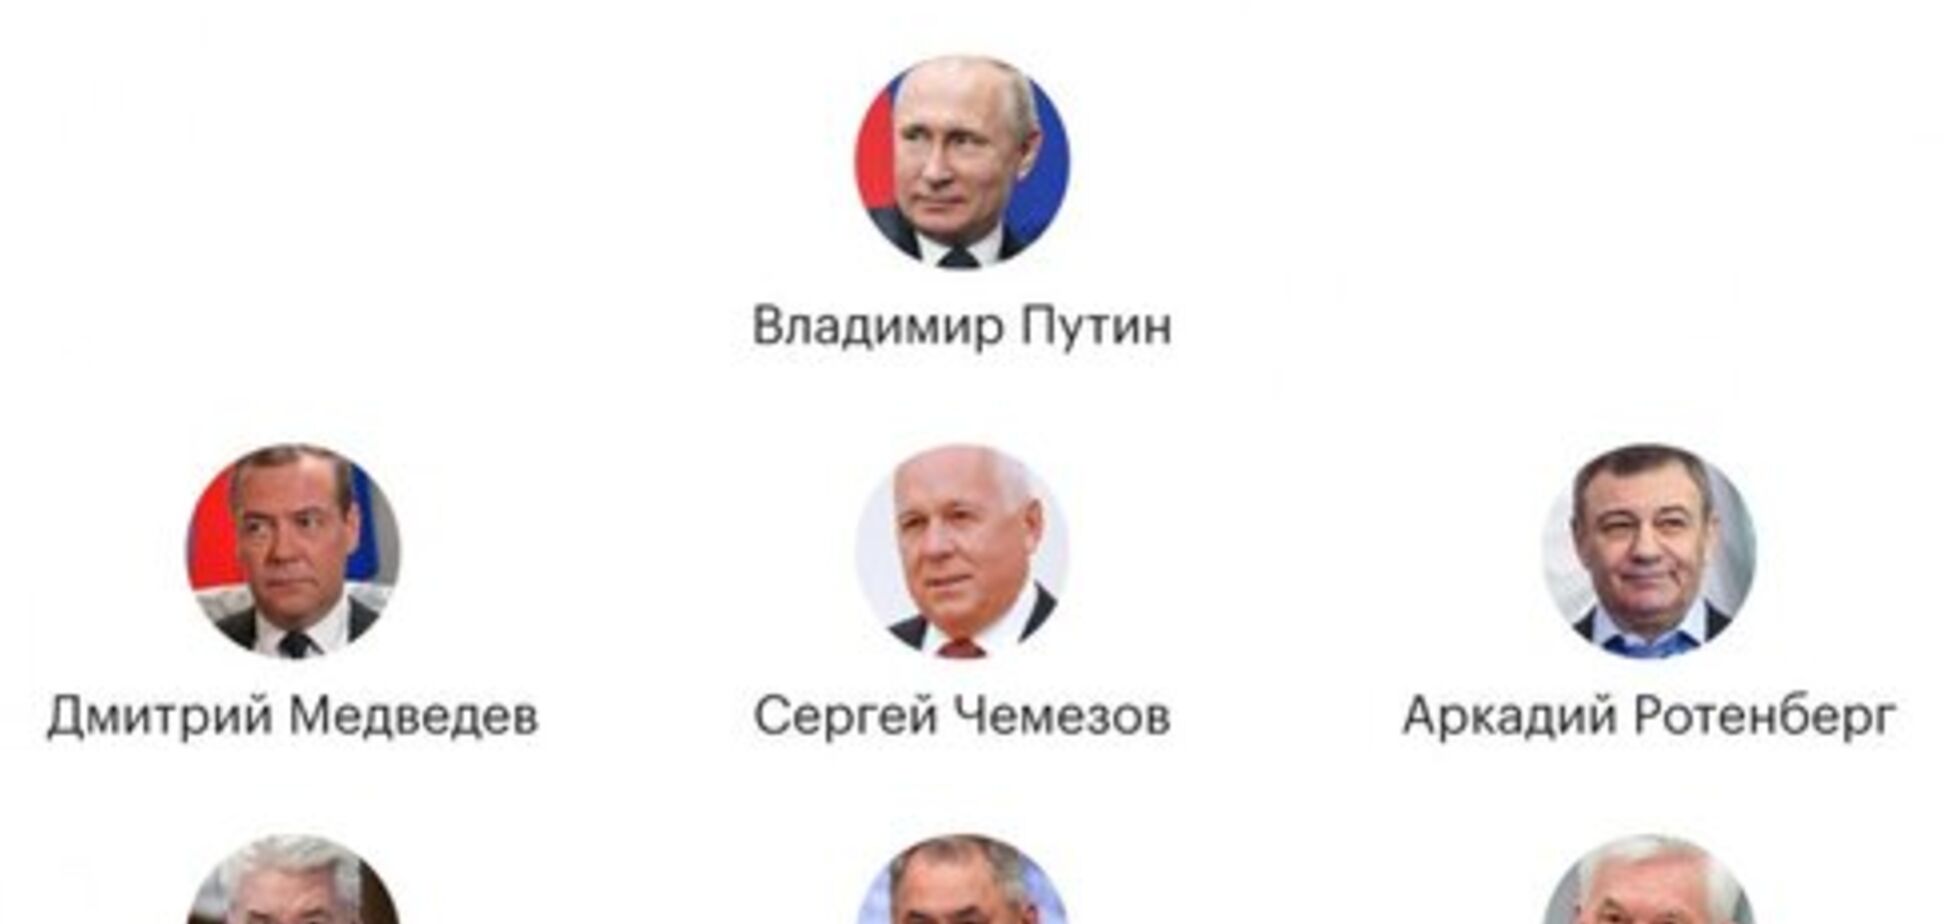 'Политбюро 2.0': в ближнем круге Путина произошли существенные изменения